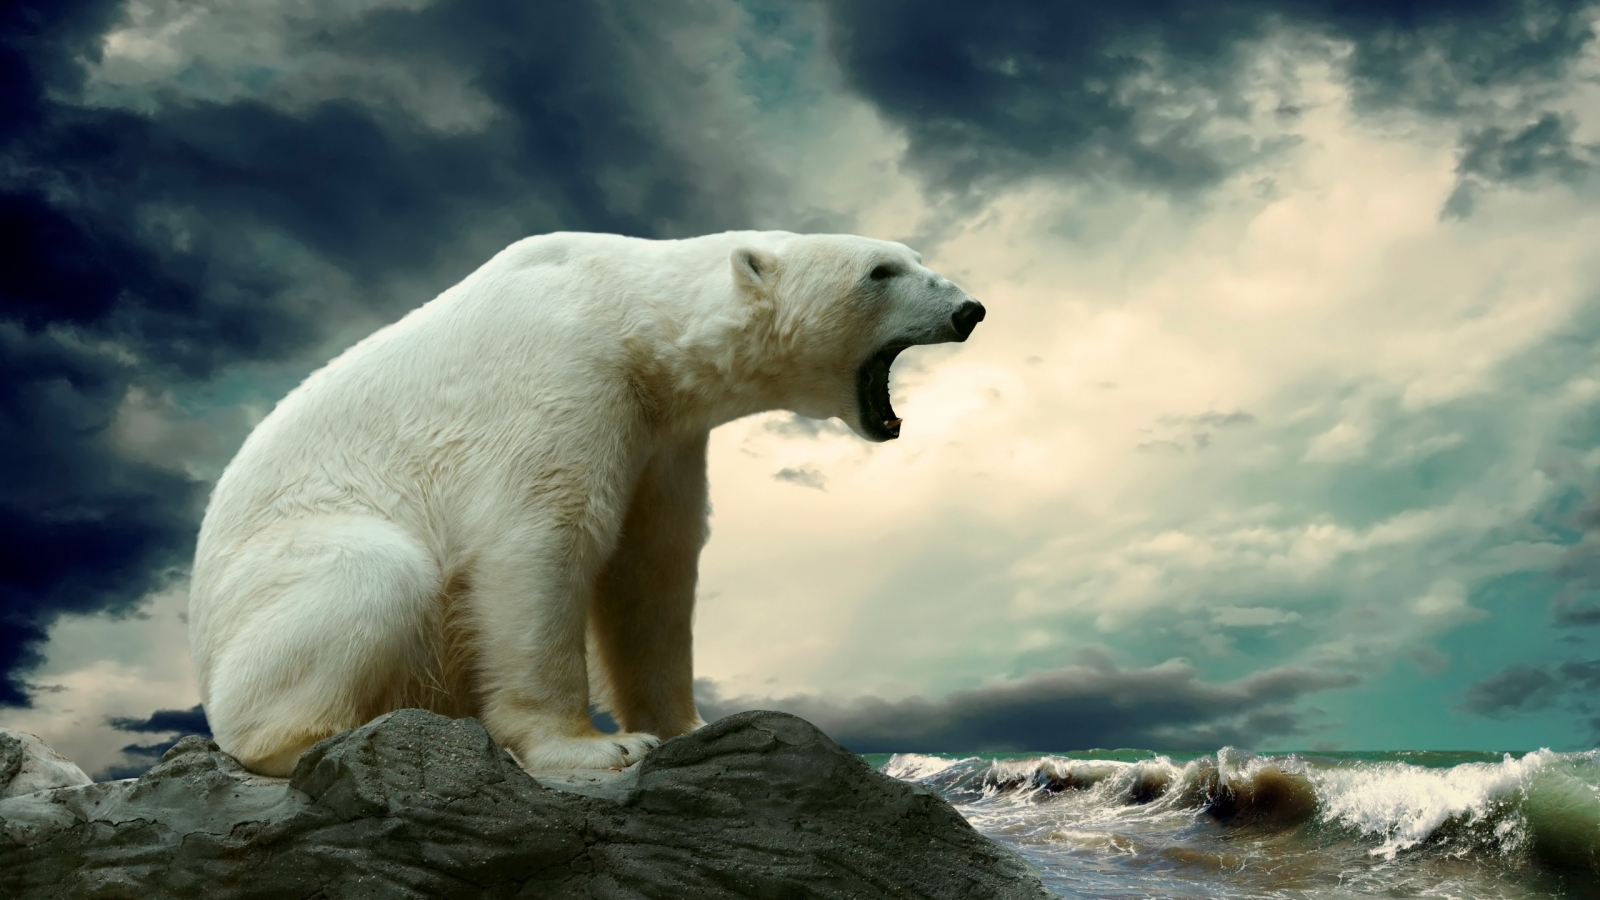 Polar Bear Shouting for 1600 x 900 HDTV resolution